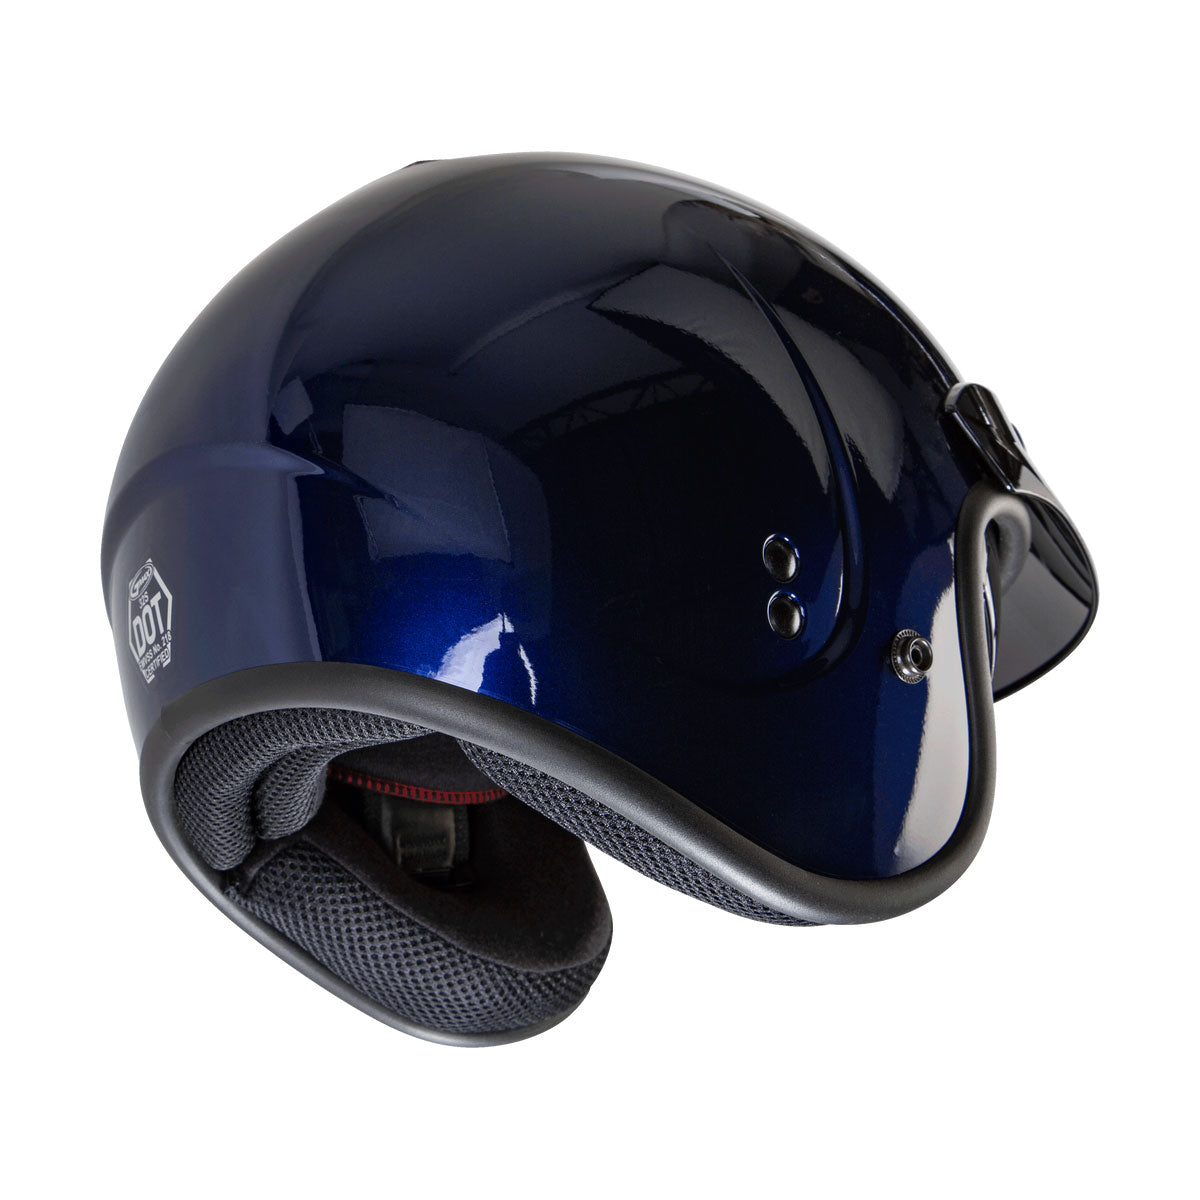 GMax GM32 Blue Open Face Helmet